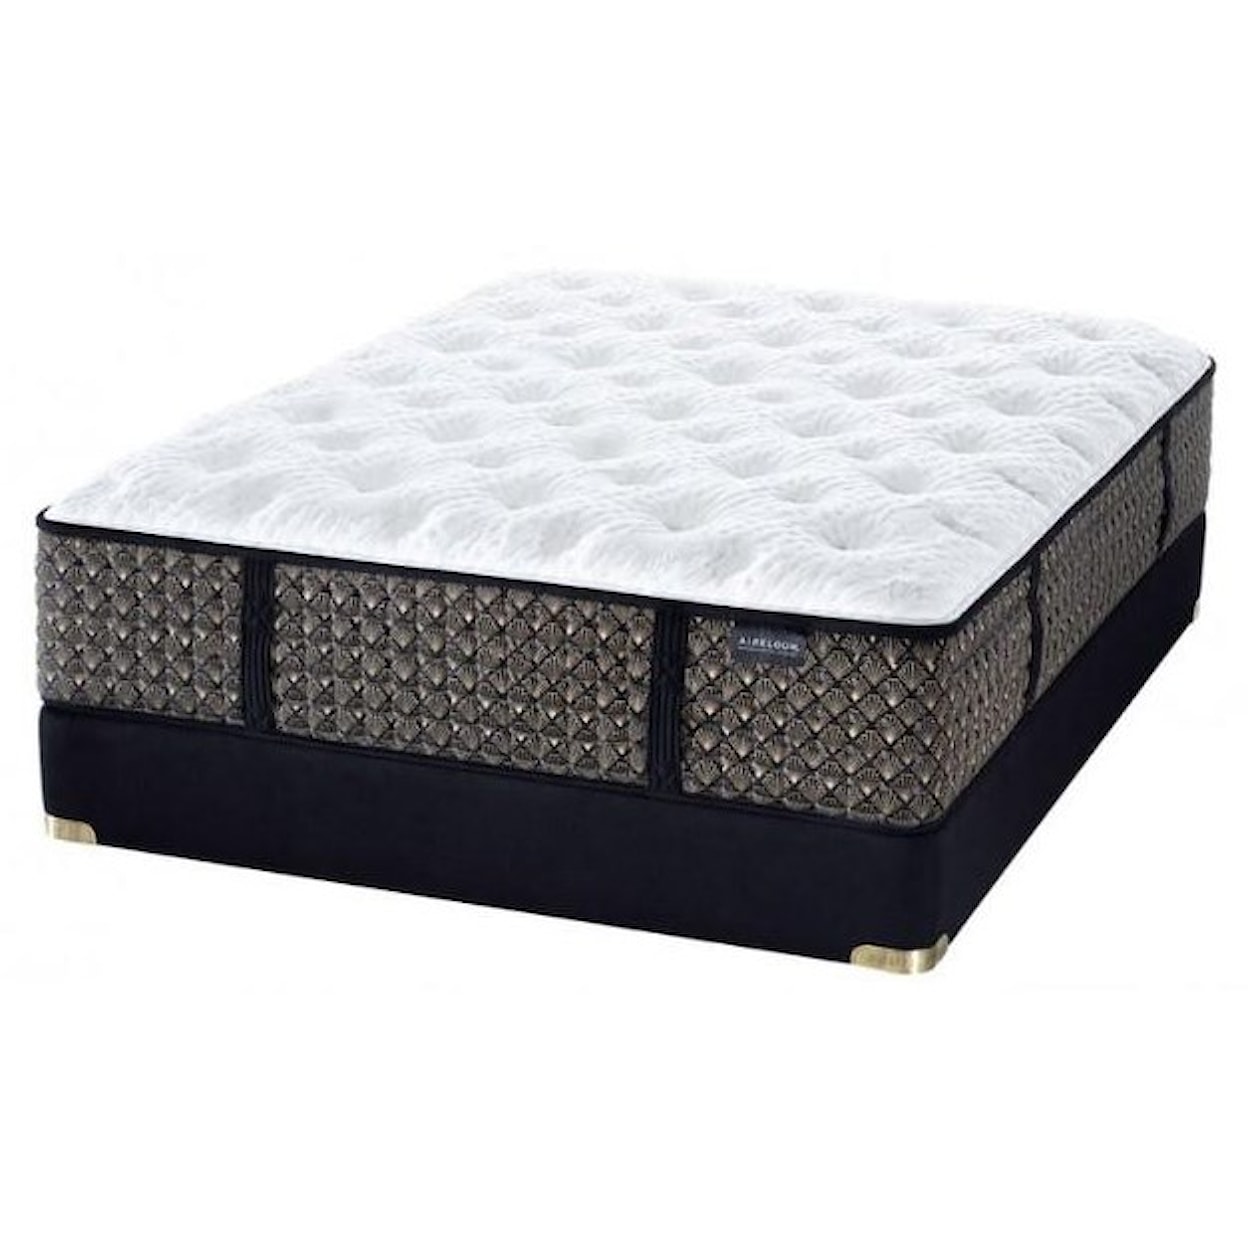 Aireloom Bedding Preferred Streamline™ Luxury Firm Queen 14" Luxury Firm Mattress